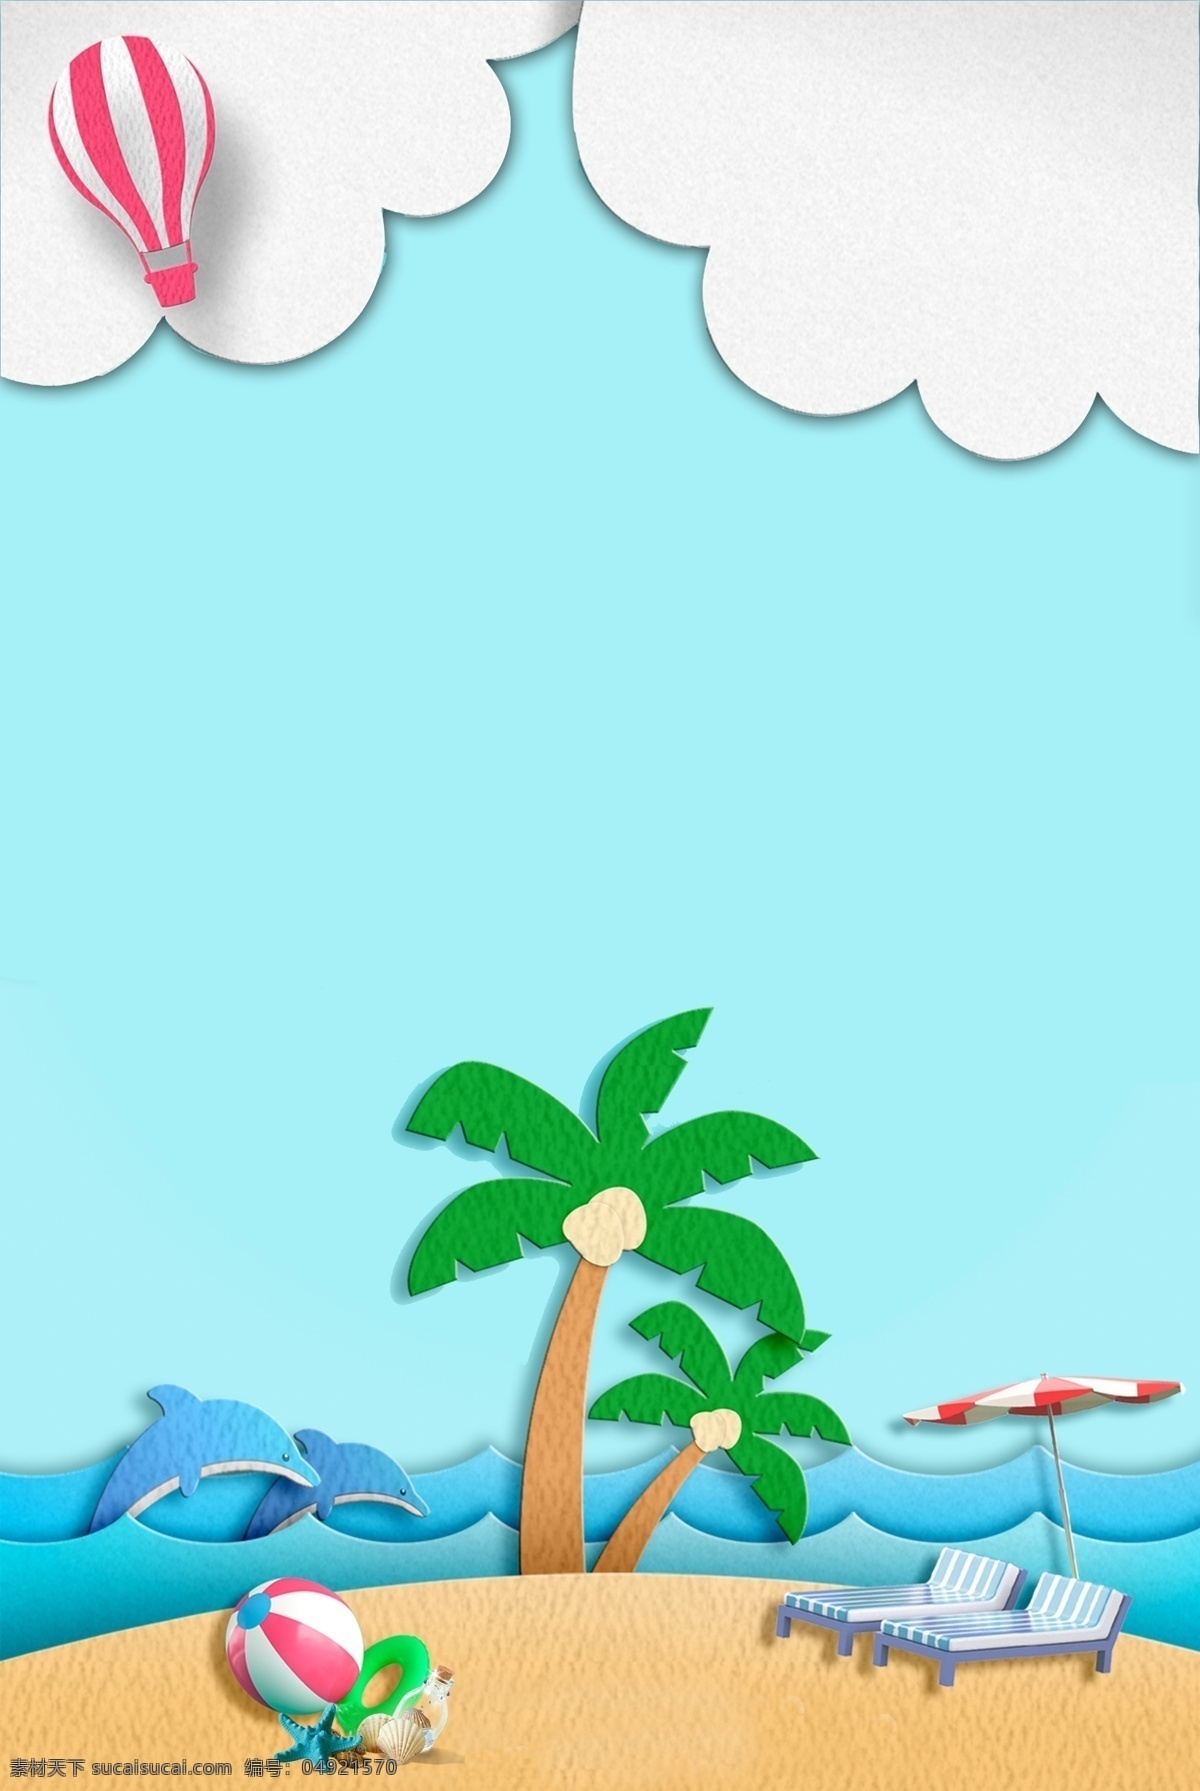 折纸 风 夏日 海滩 风情 假日 卡通 旅行 大海 躺椅 风景 海豚 夏日度假 海边 沙滩 旅游 折纸风 蓝天 椰子树 休